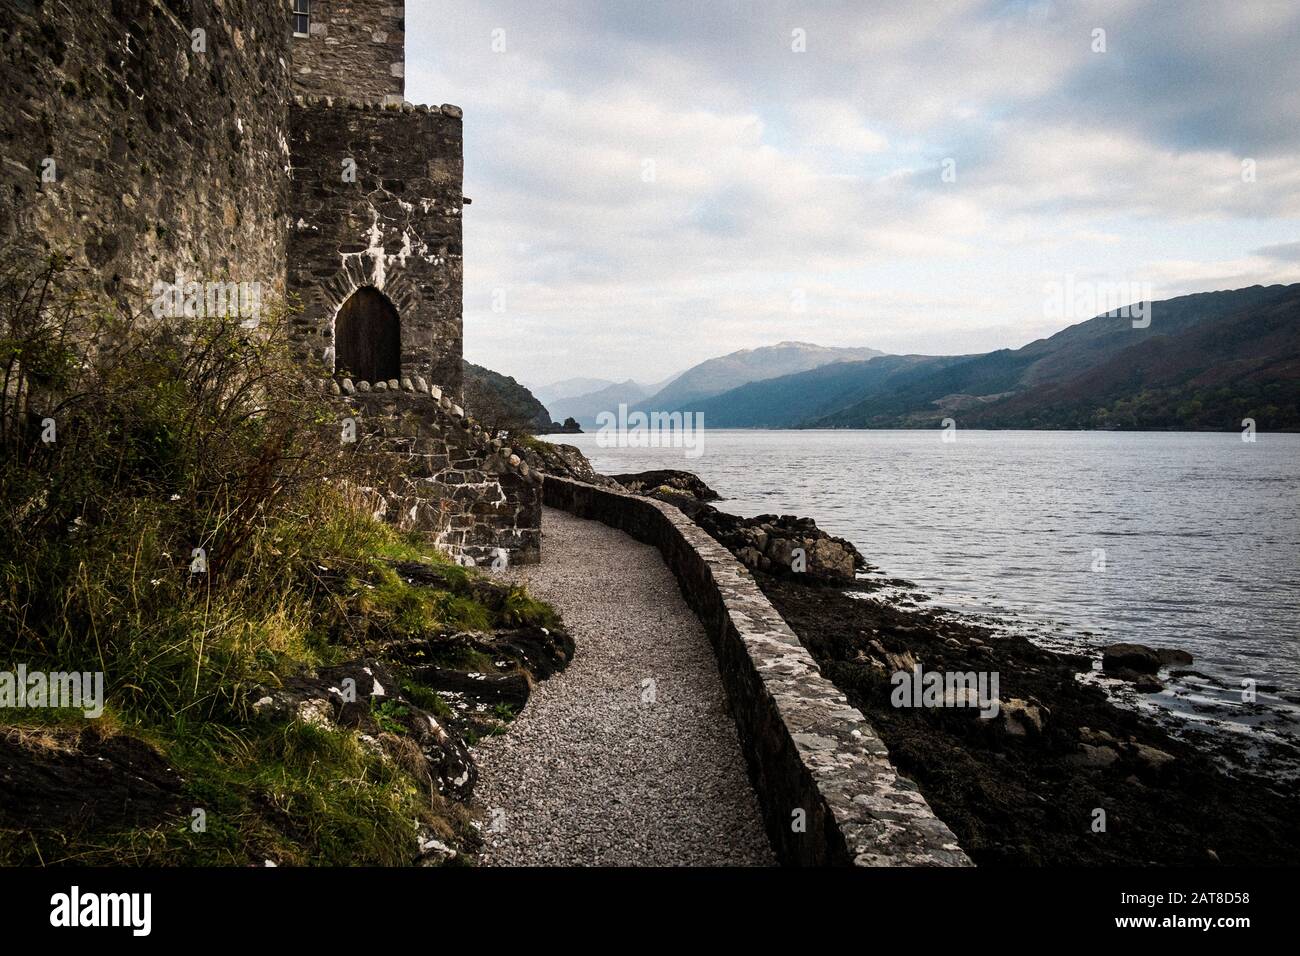 Castello in muro che si affaccia su un lago con montagne in lontananza. Foto Stock